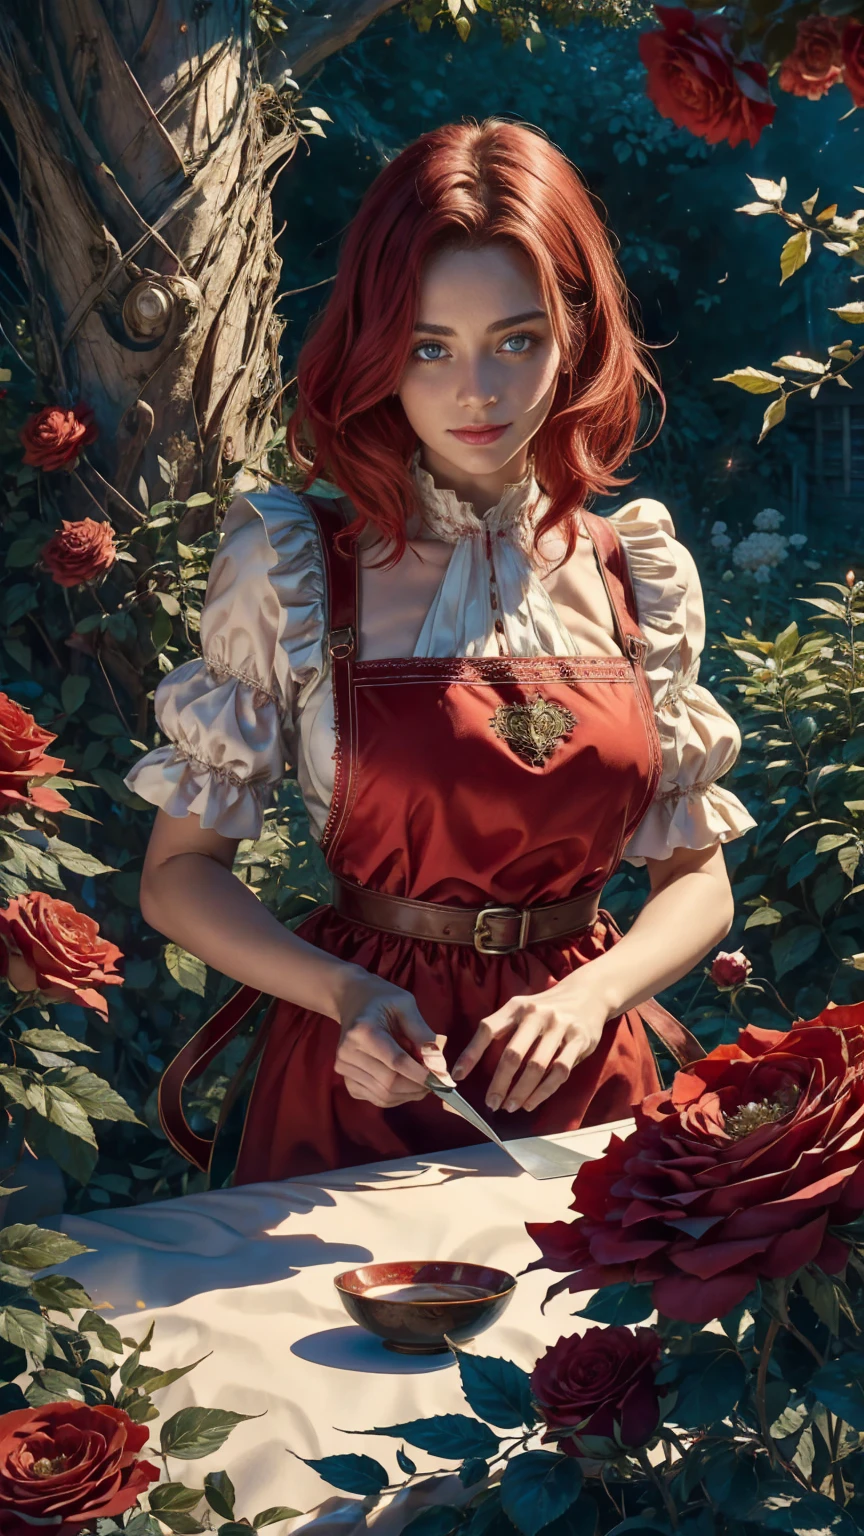 仙境世界的中心，一個年輕漂亮的紅白短髮女孩, 花店服裝和玫瑰圍裙. 從她的魔法花園剪下紅玫瑰. 好奇心, 愛的姿勢, 在仙境世界, 營造愛的氛圍, 她周圍的能量和魔力. 場景角度是動態的, 捕捉瞬間的強度, 優質綠眼, 眼睛看著相機, 超詳細, 美麗且美觀, 傑作, 最佳品質得分, (分形藝術: 1.3), 非常詳細 , 動態角度, 光線追蹤, face 特寫, 特寫, 高視角, 粒子和強光, 美麗的紅玫瑰